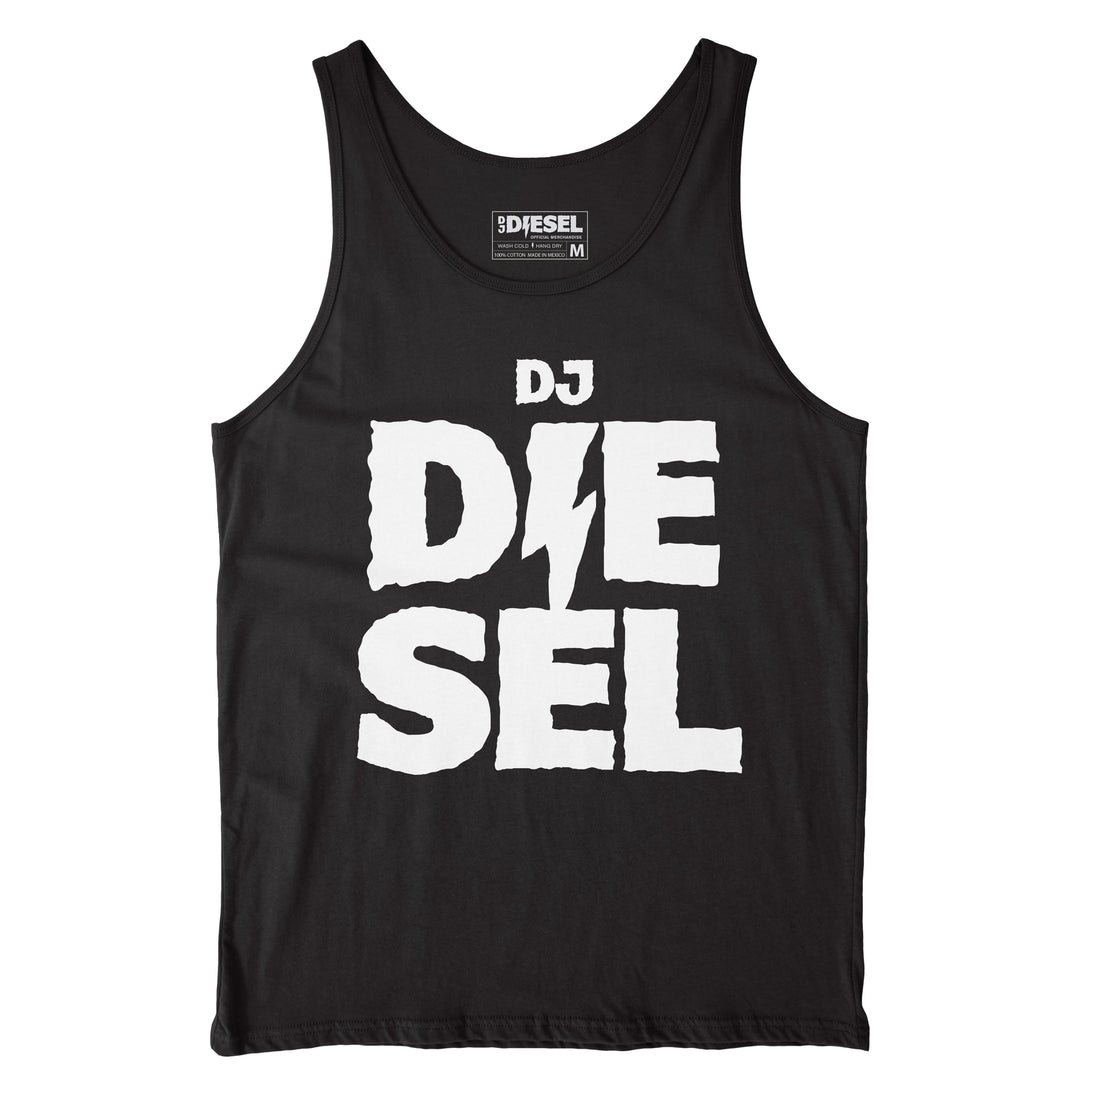 DJ DIESEL - Stacked - Black Tank Top